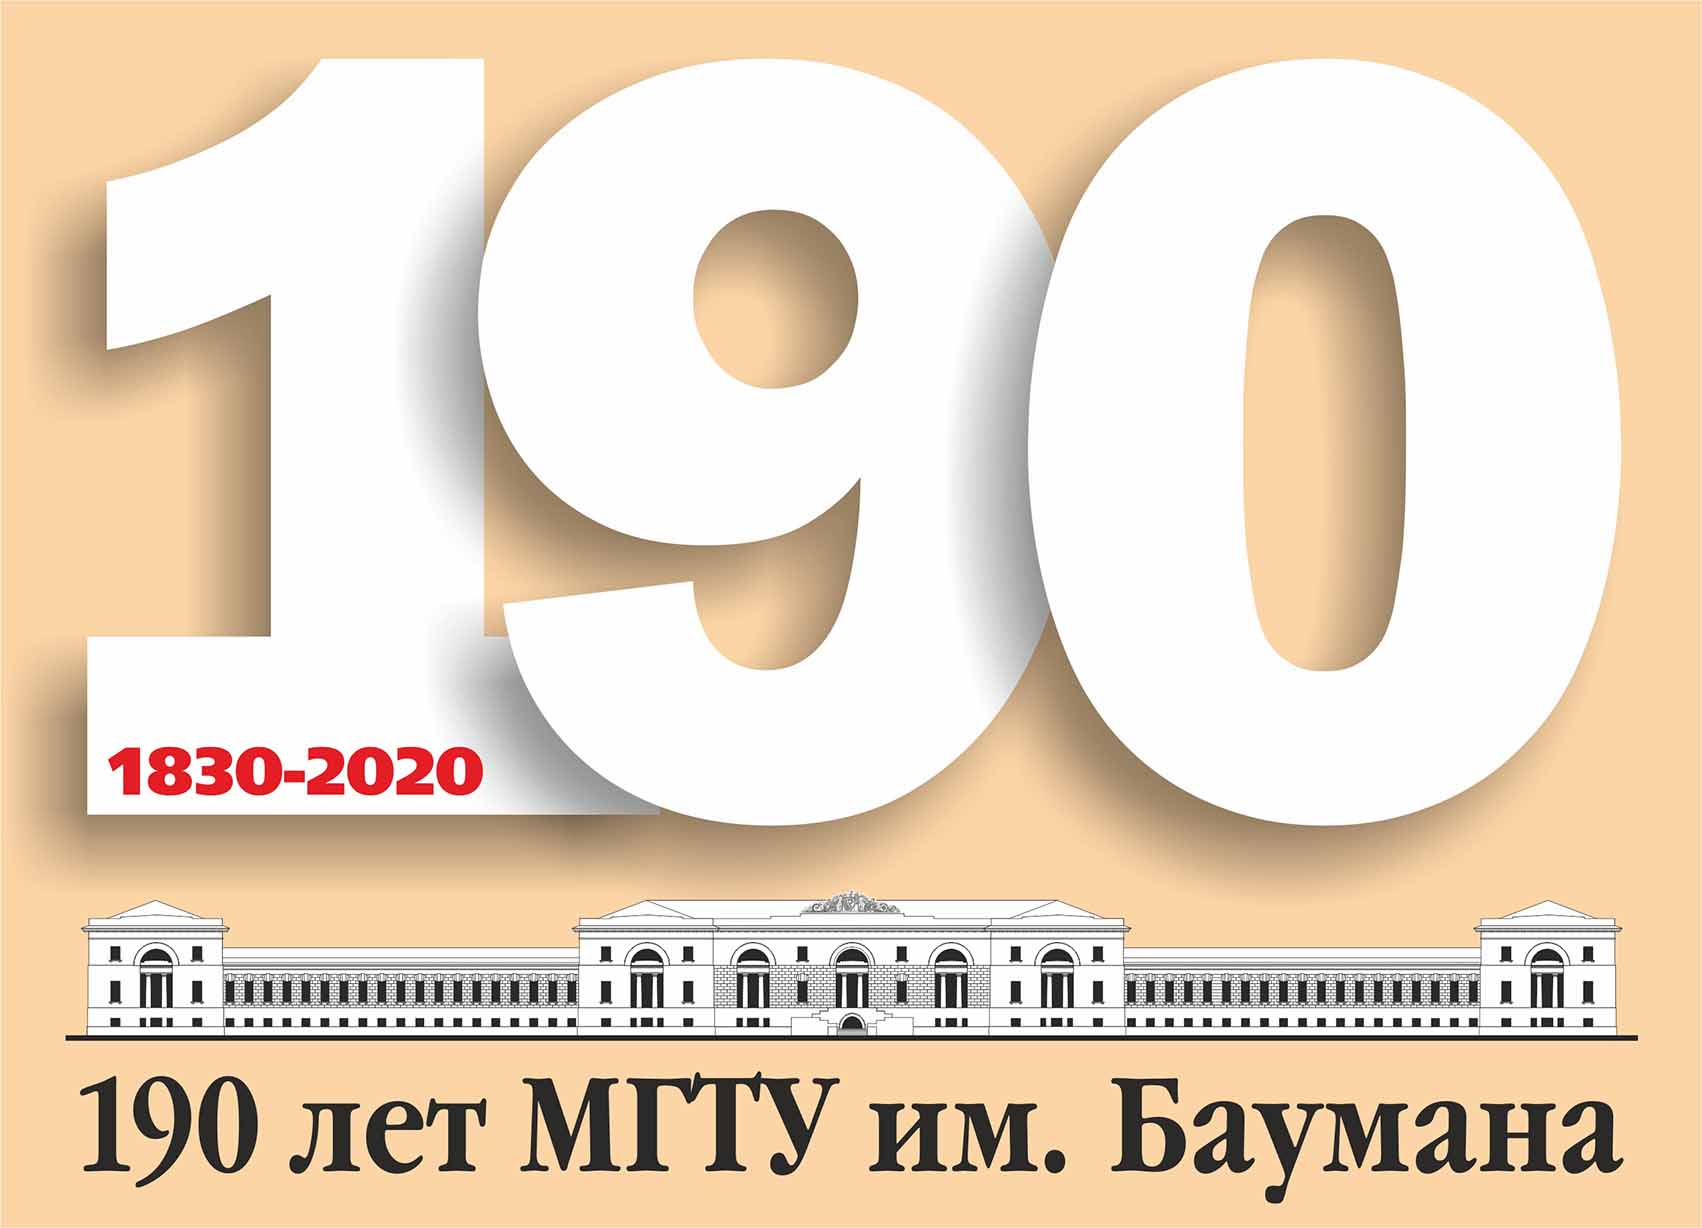 МГТУ им. Баумана 190 лет